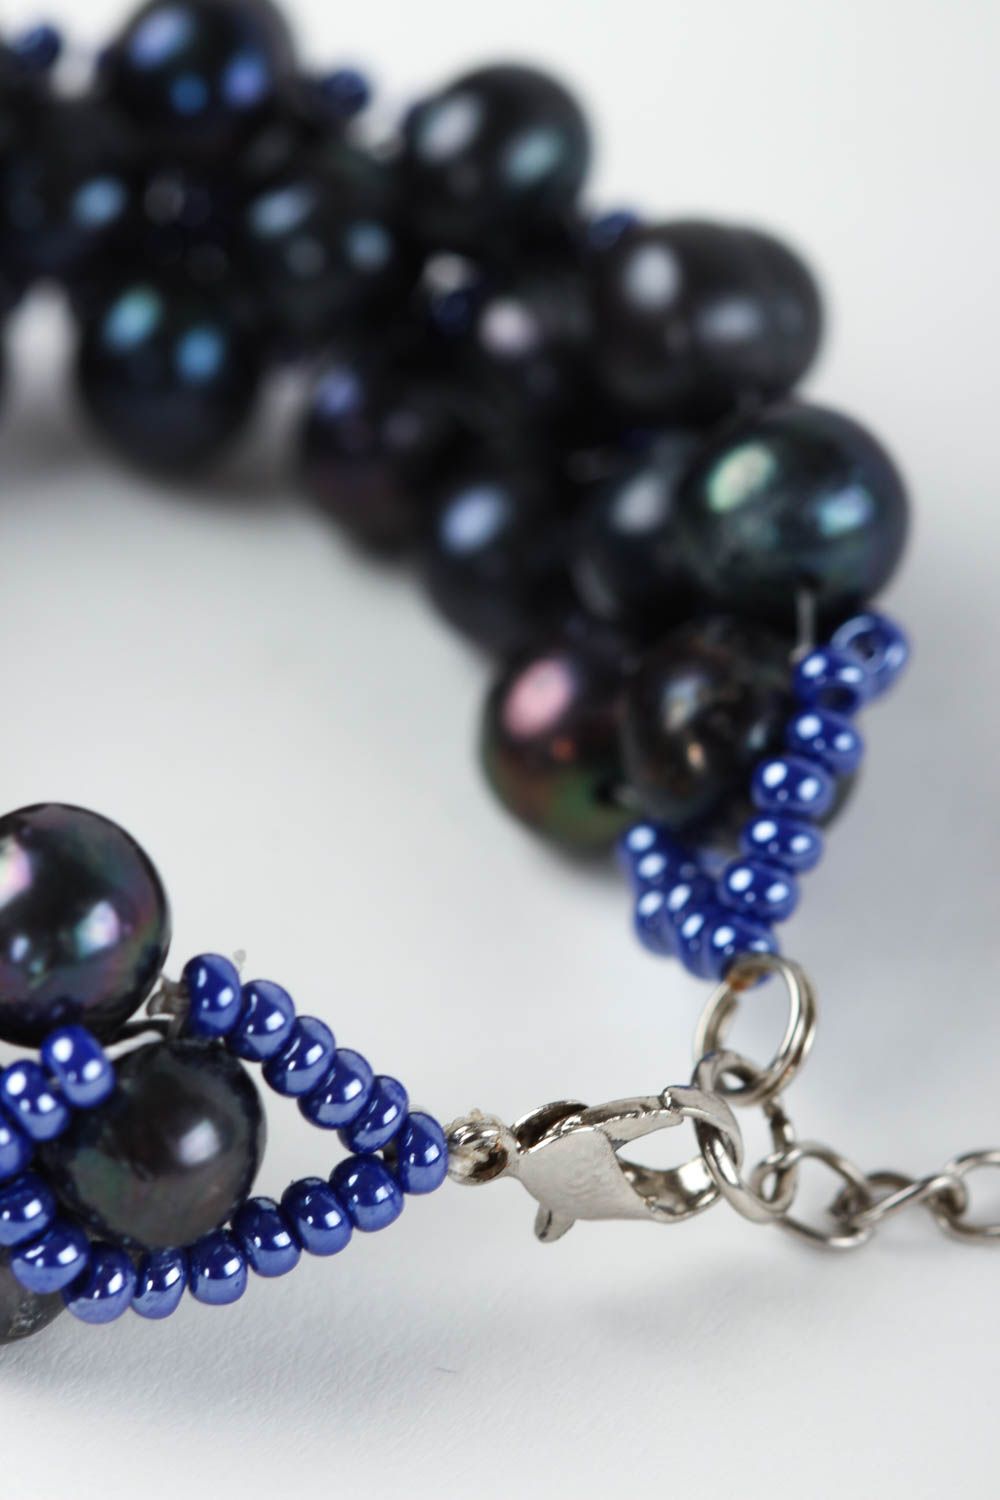 Black beads elegant chain bracelet for teen girls photo 4